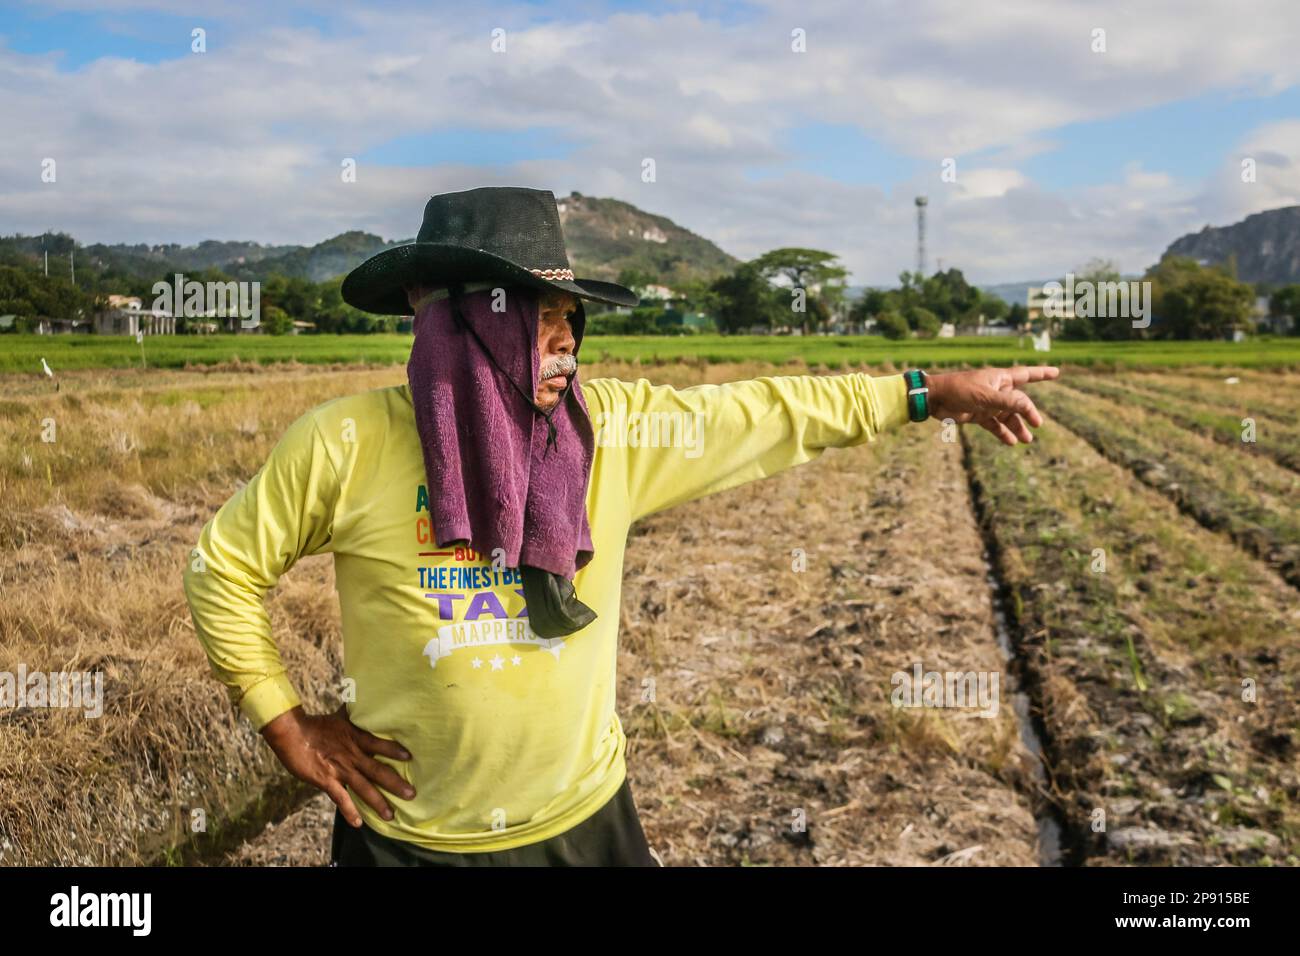 Ein Landwirt zeigt seinen Arbeitsplatz auf einem kleinen Ackerland in Teresa. Die Landwirte auf den Philippinen stehen vor einer Vielzahl sozialer Probleme. Eines der schwerwiegendsten sozialen Probleme ist die Landlosigkeit, die durch die unzureichende Unterstützung der Regierung noch verschärft wird. Viele philippinische Bauern sind gezwungen, als Pächter oder Teilhaber zu arbeiten, wobei sie wenig Sicherheit und Kontrolle über ihr eigenes Land haben. Darüber hinaus leiden die Landwirte unter den drohenden Düngemittelpreisen, die über 2000 Pesos (40 USD) pro Sack liegen, was zu einem niedrigen Einkommen führt und sich negativ auf ihren Lebensunterhalt auswirkt. Stockfoto